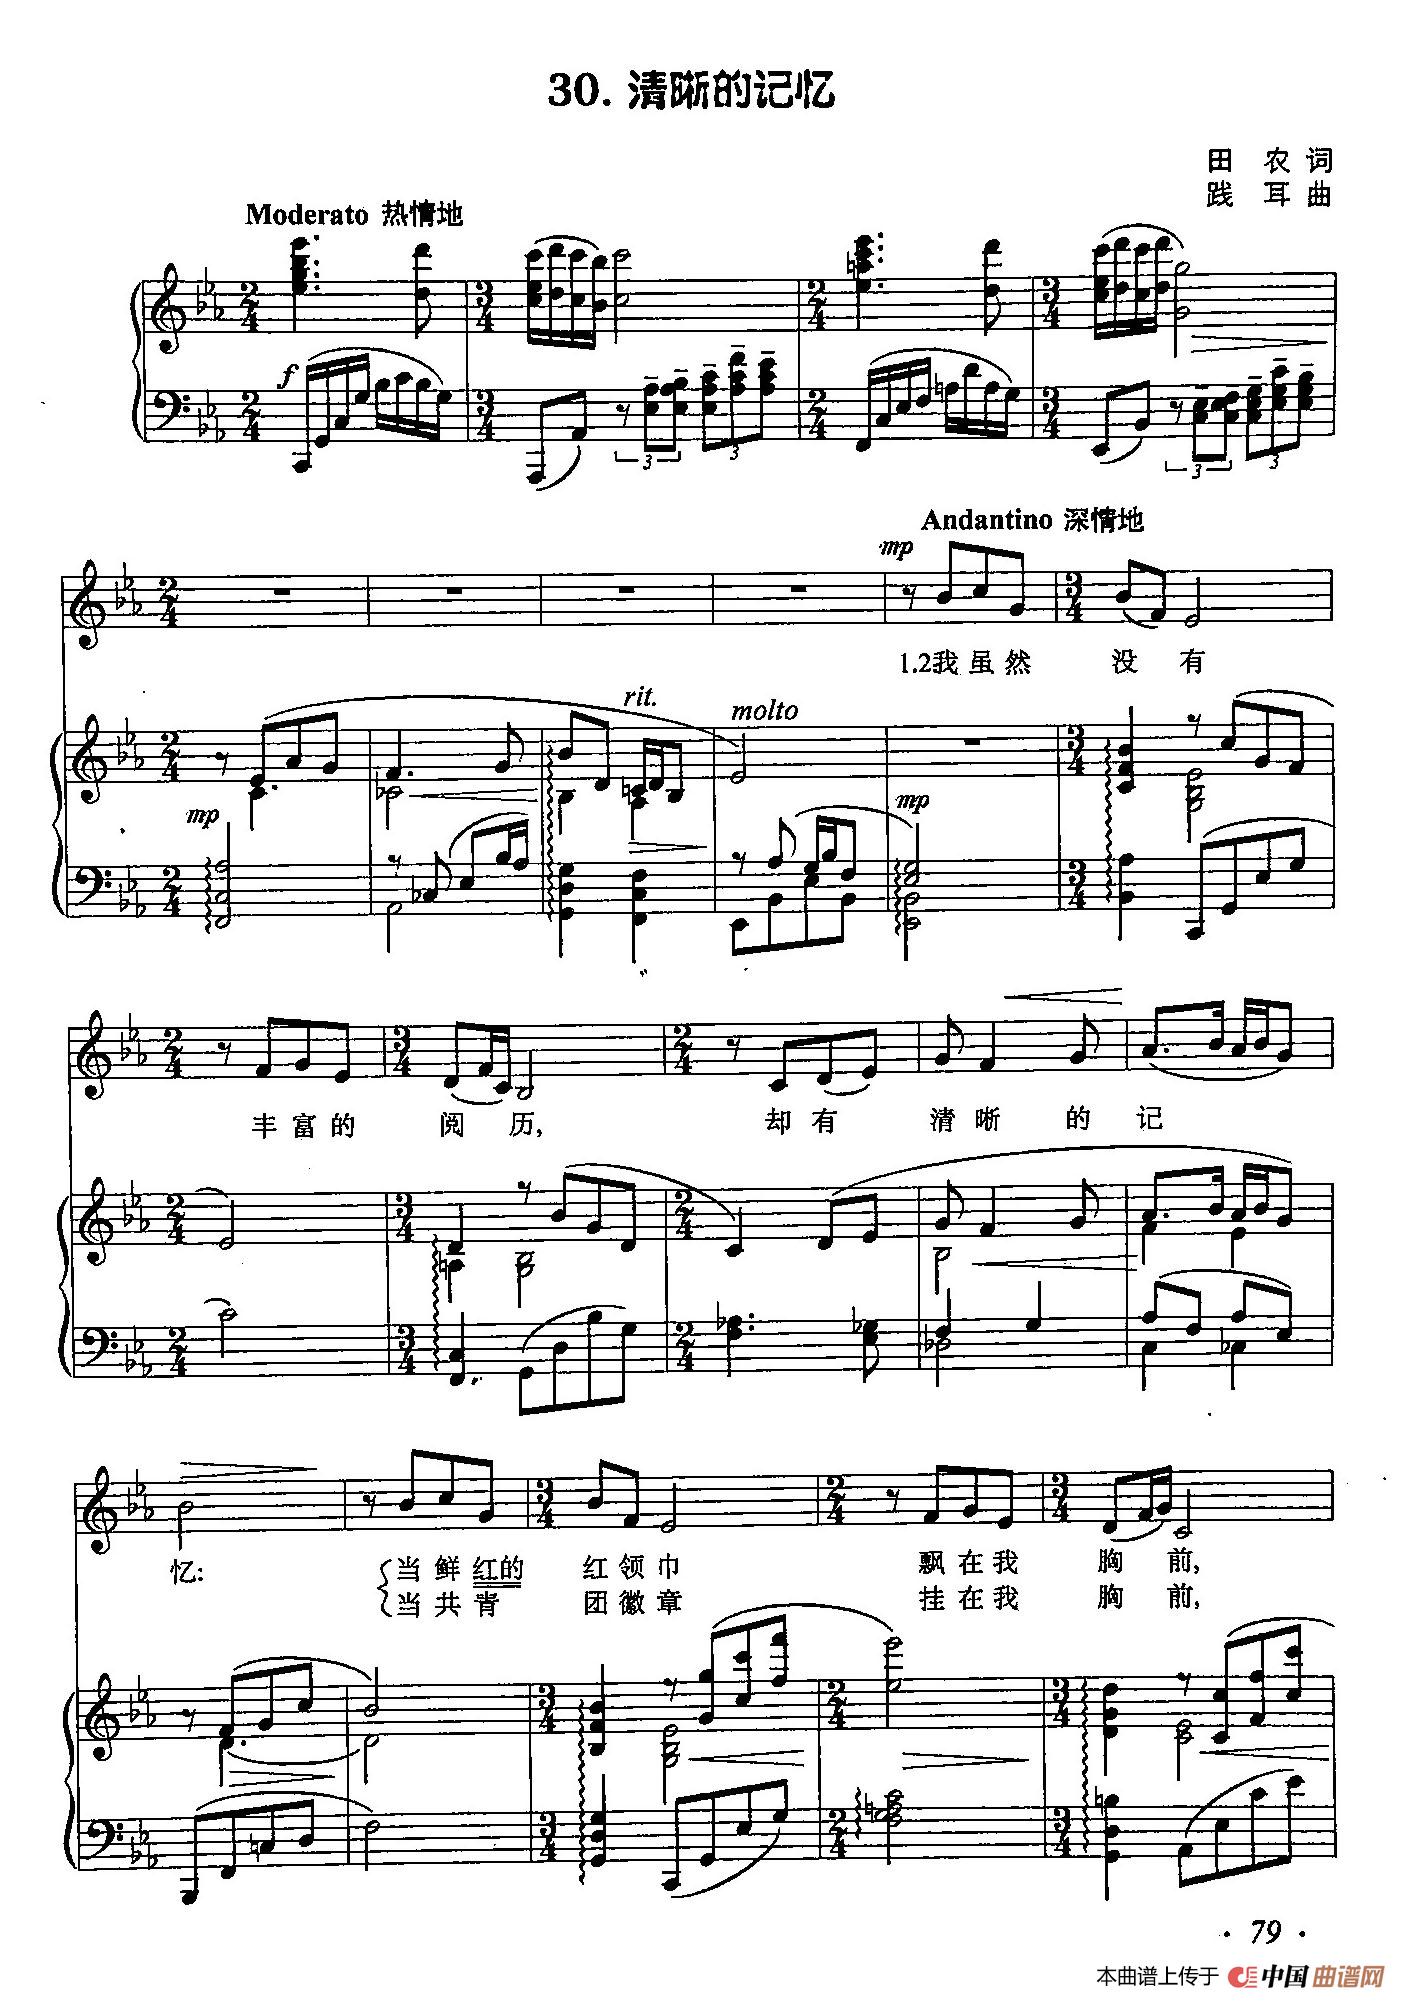 丁小琴编-30清晰的记忆曲谱（美声曲谱图下载分享）